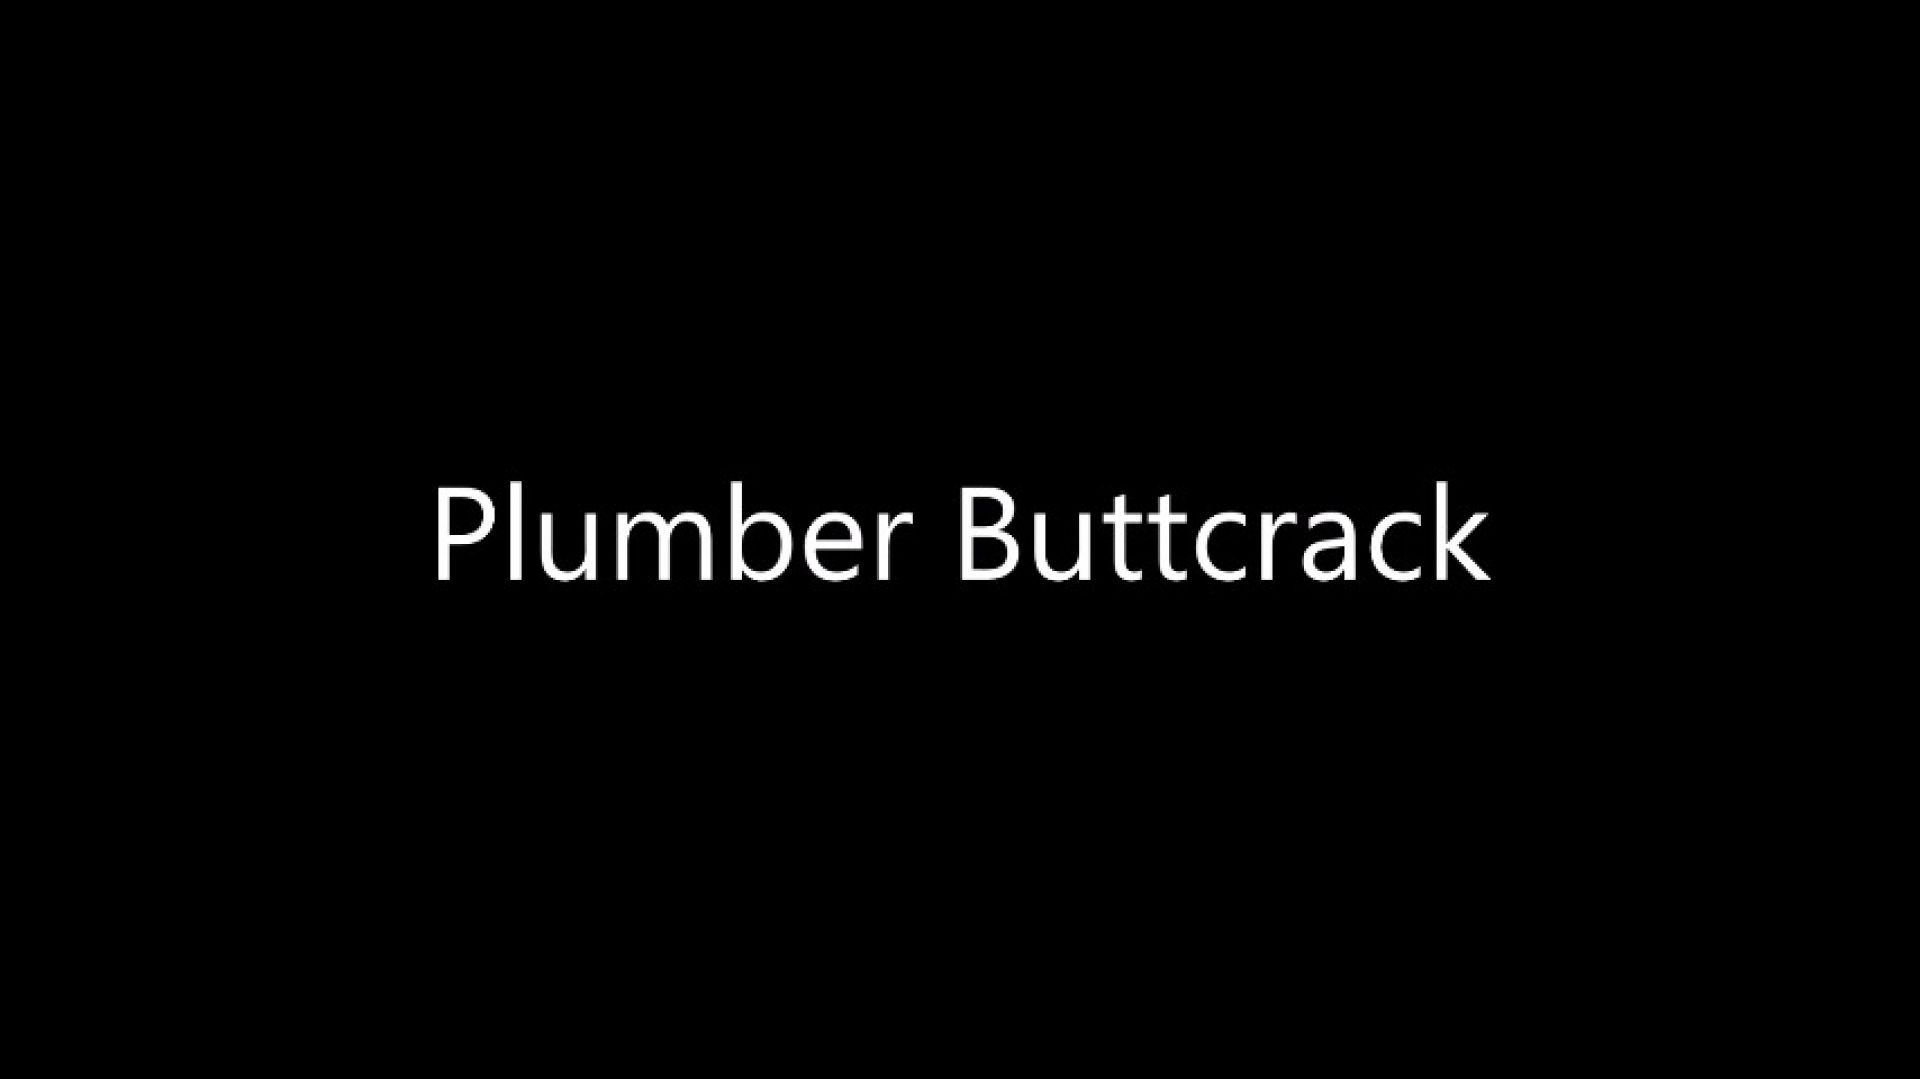 Plumber Buttcrack